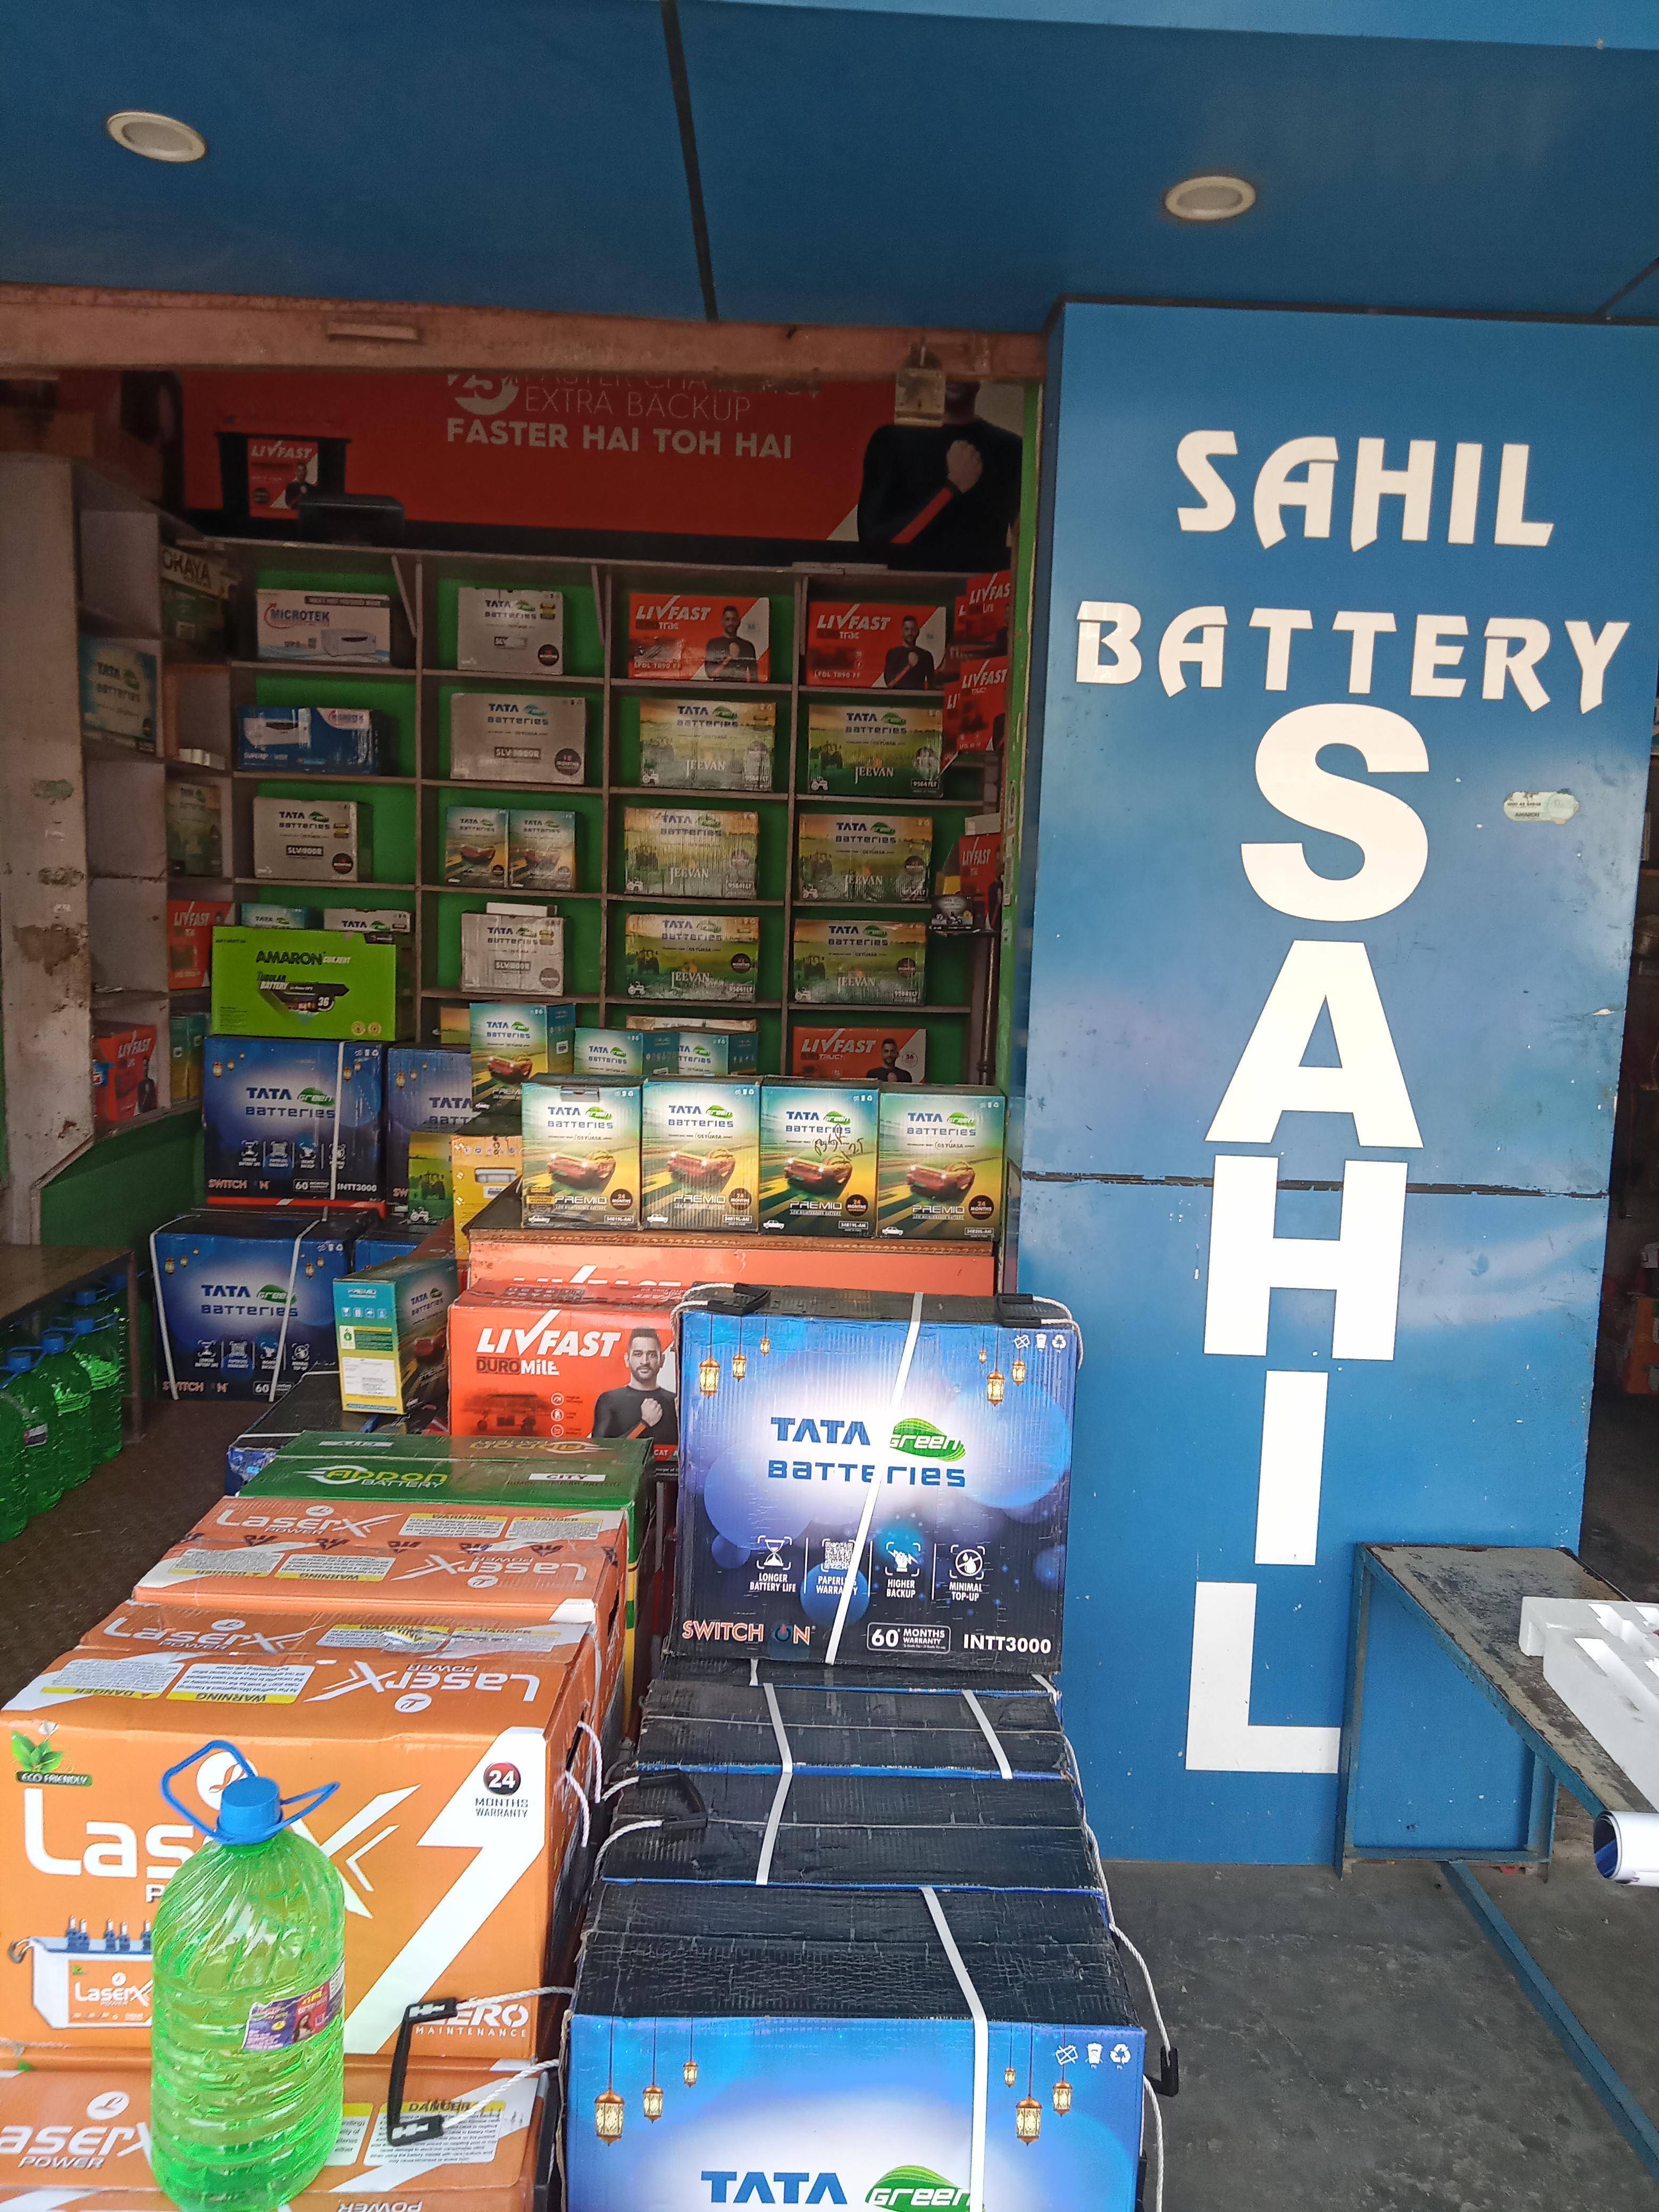 Sahil Battery